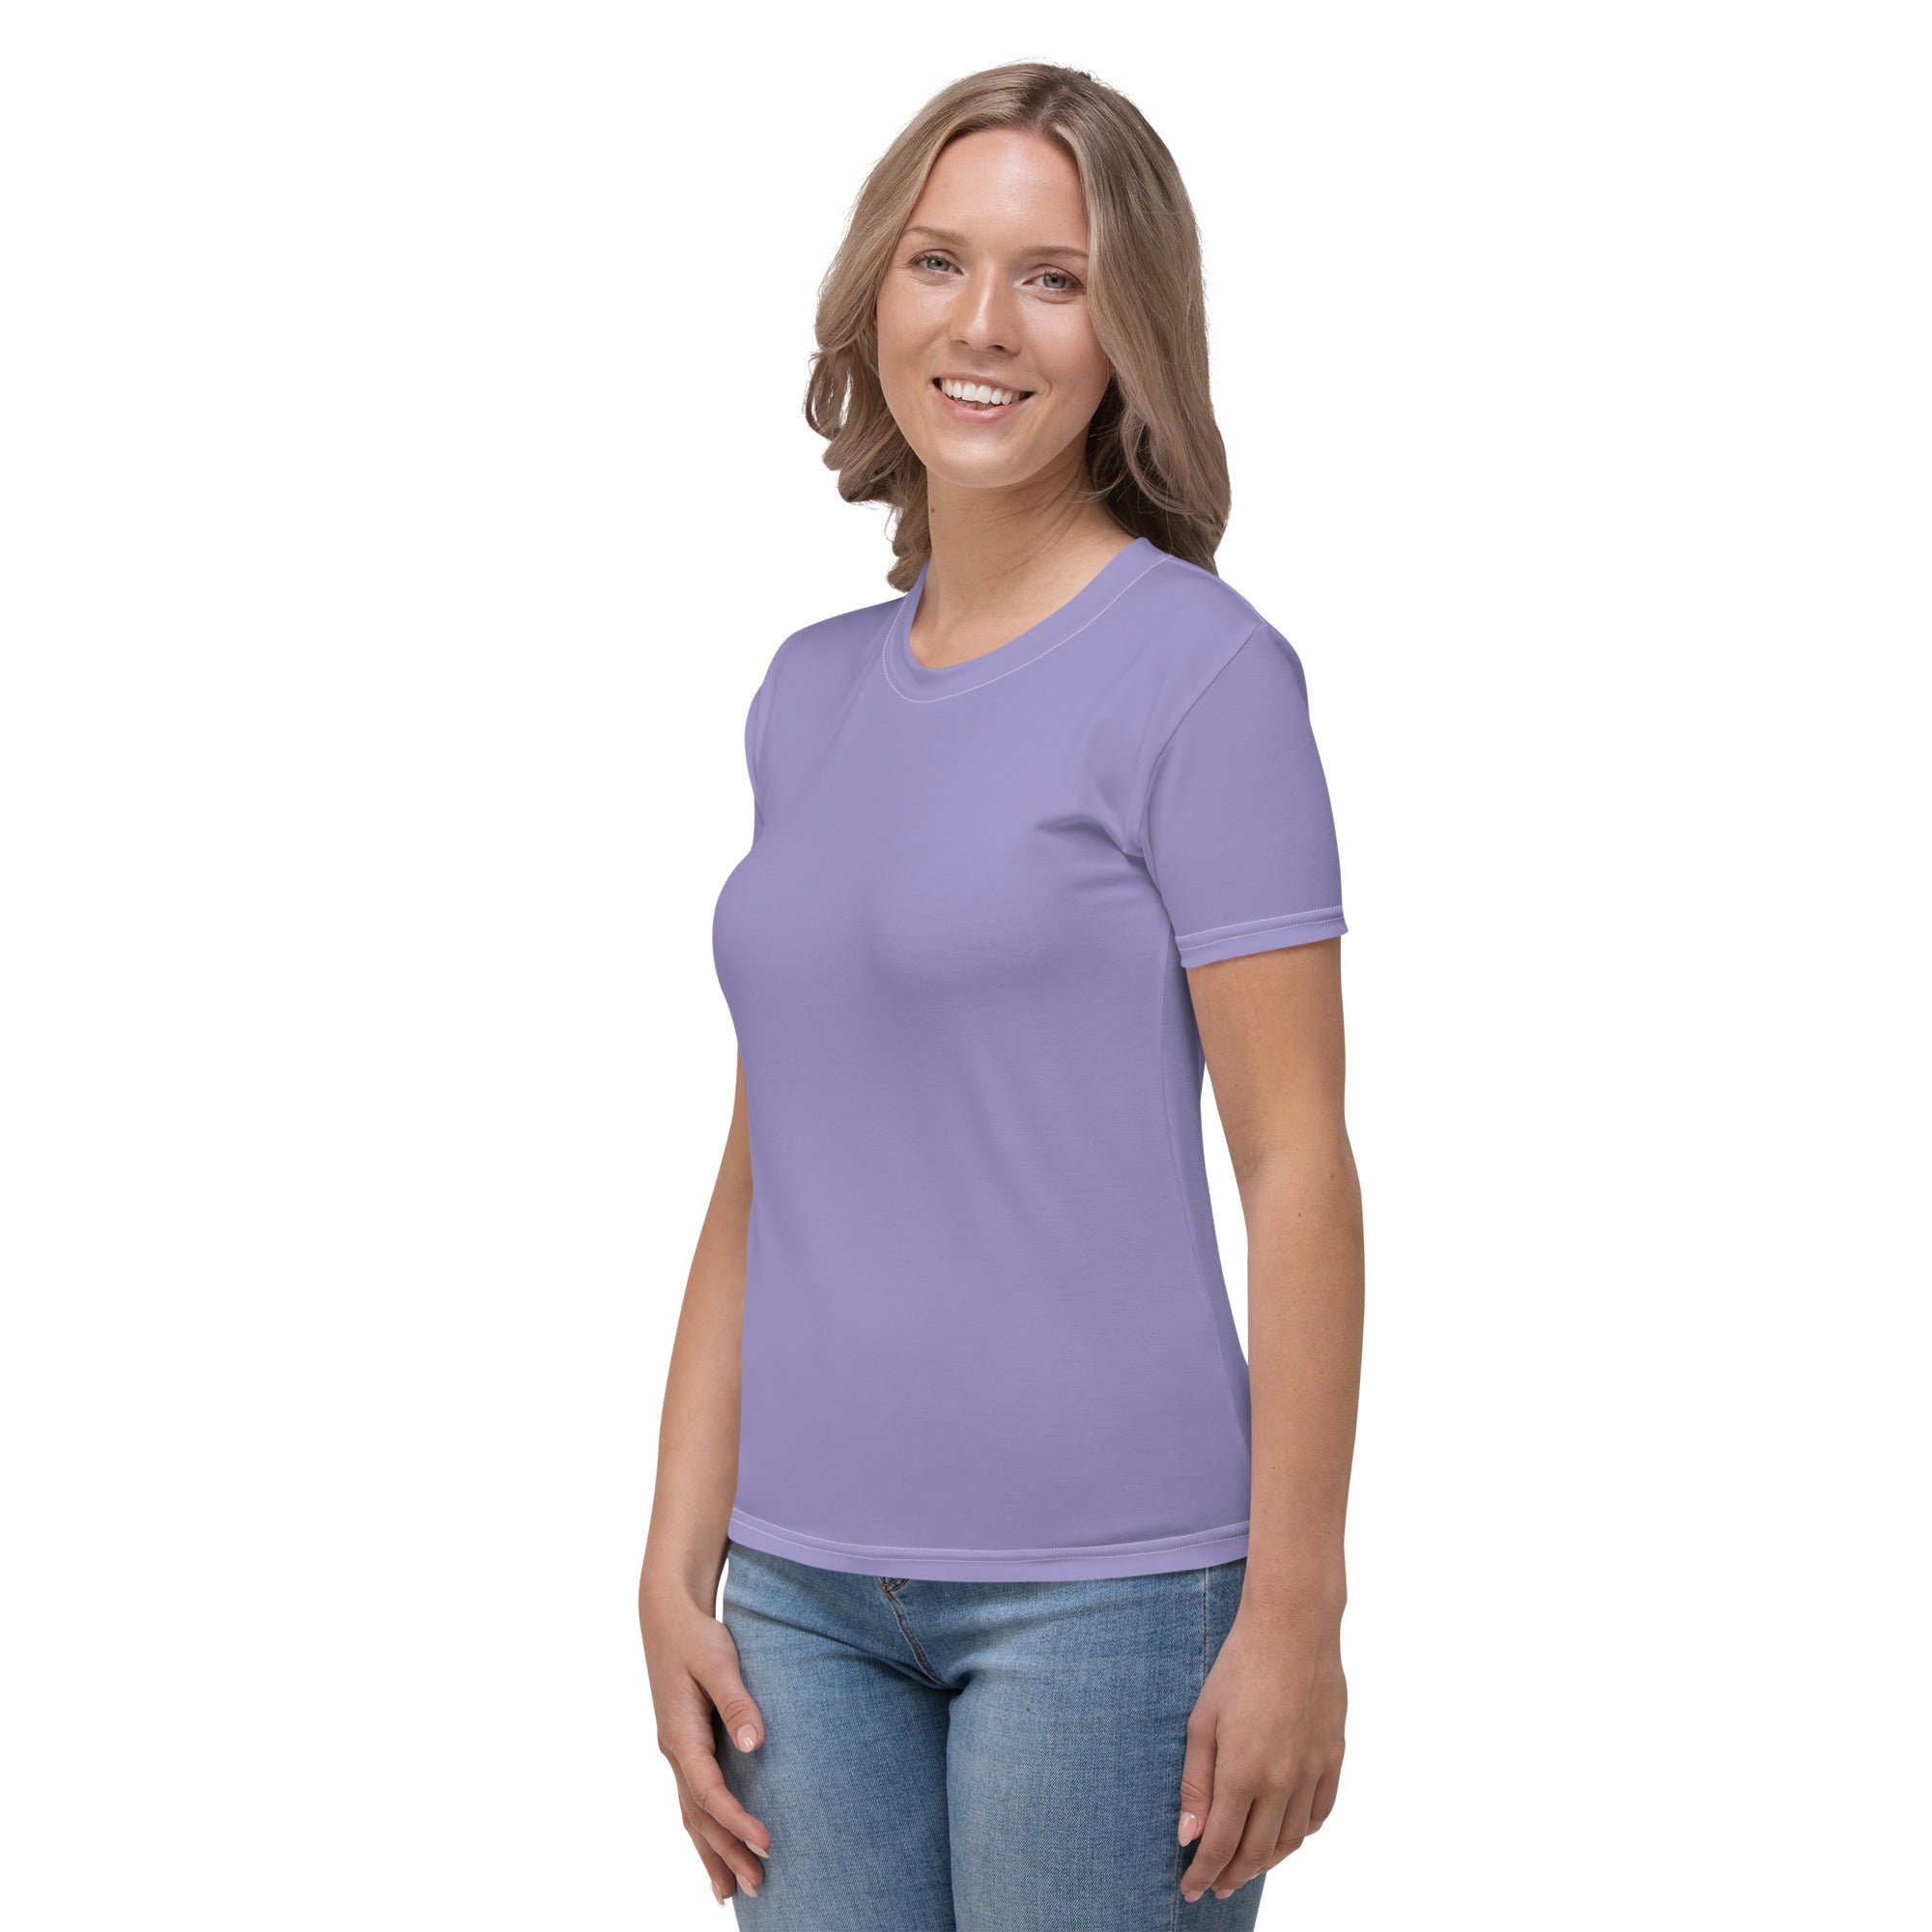 Lavender Purple T-shirt